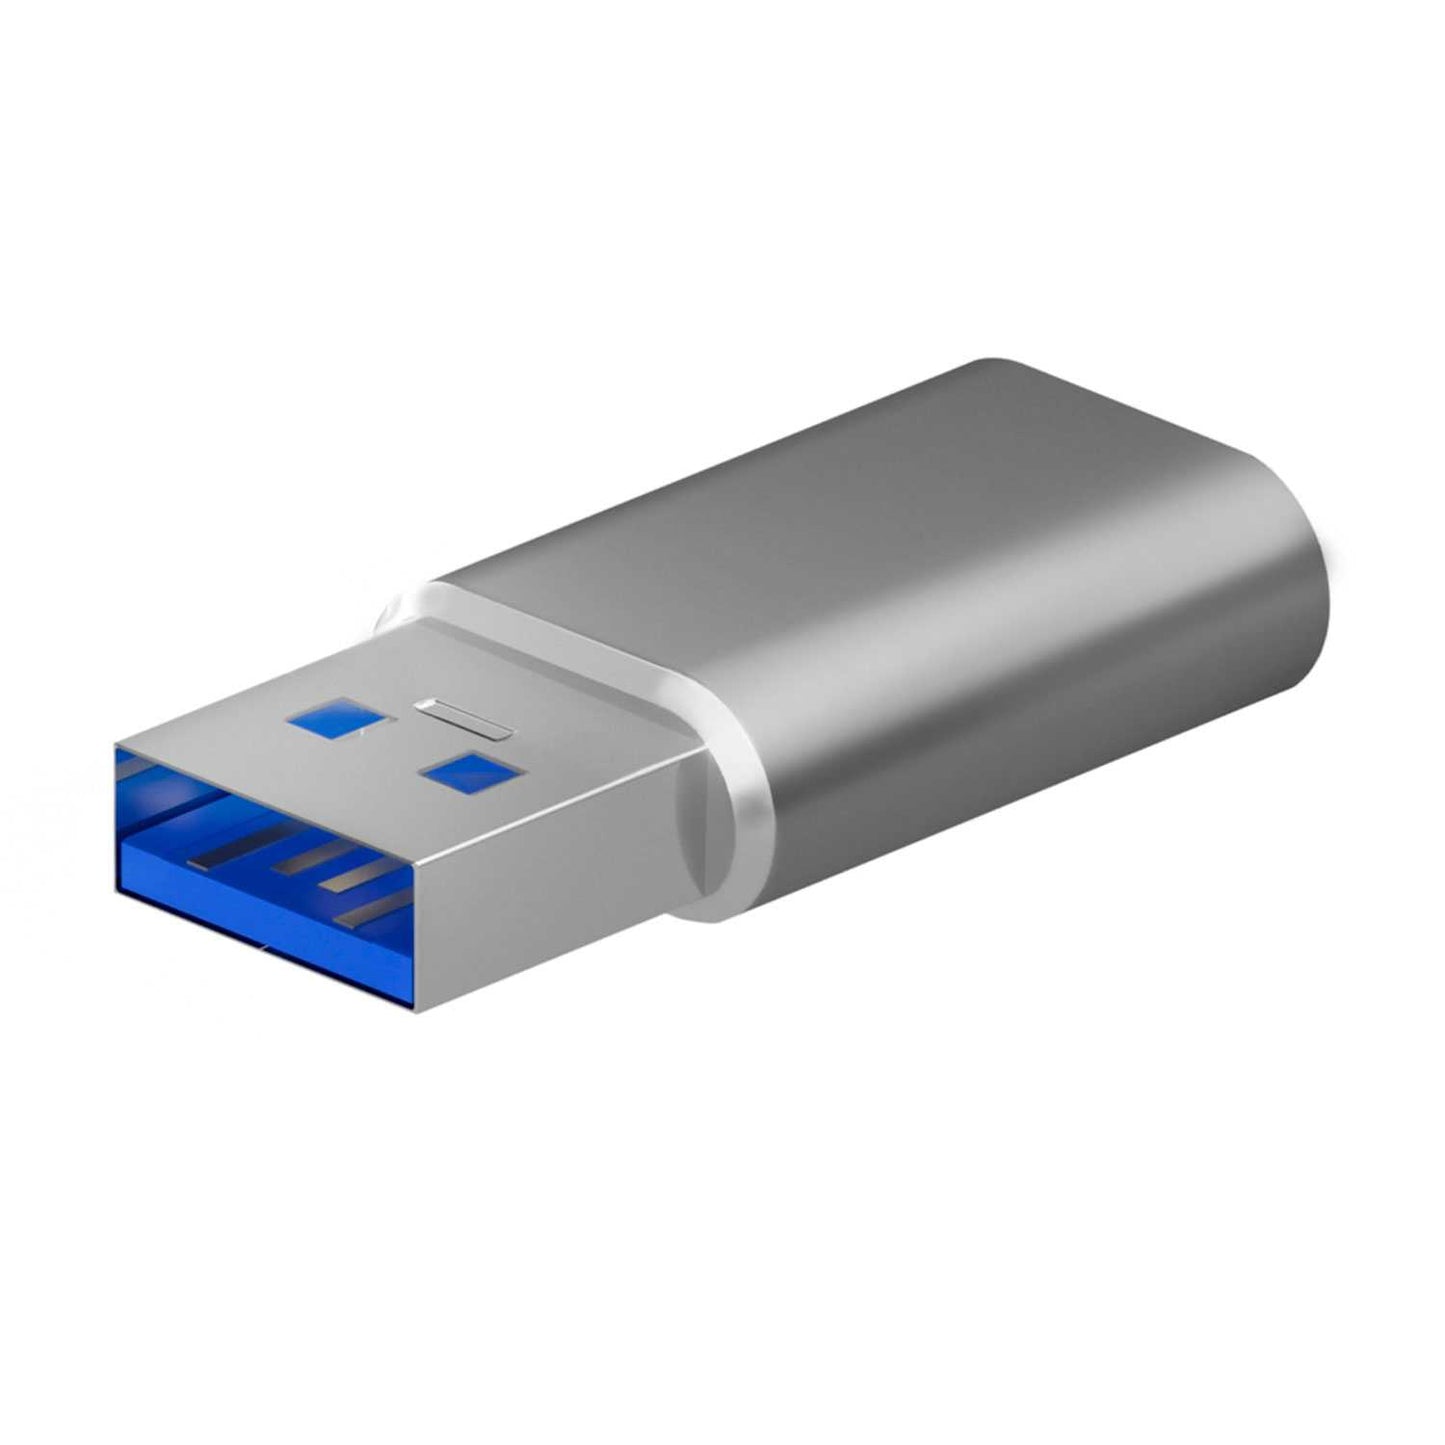 Aisens Mini adaptador USB 3.2 Gen 2 / USB 2.0 3A, Tipo USB-C/H-A/M, Gris